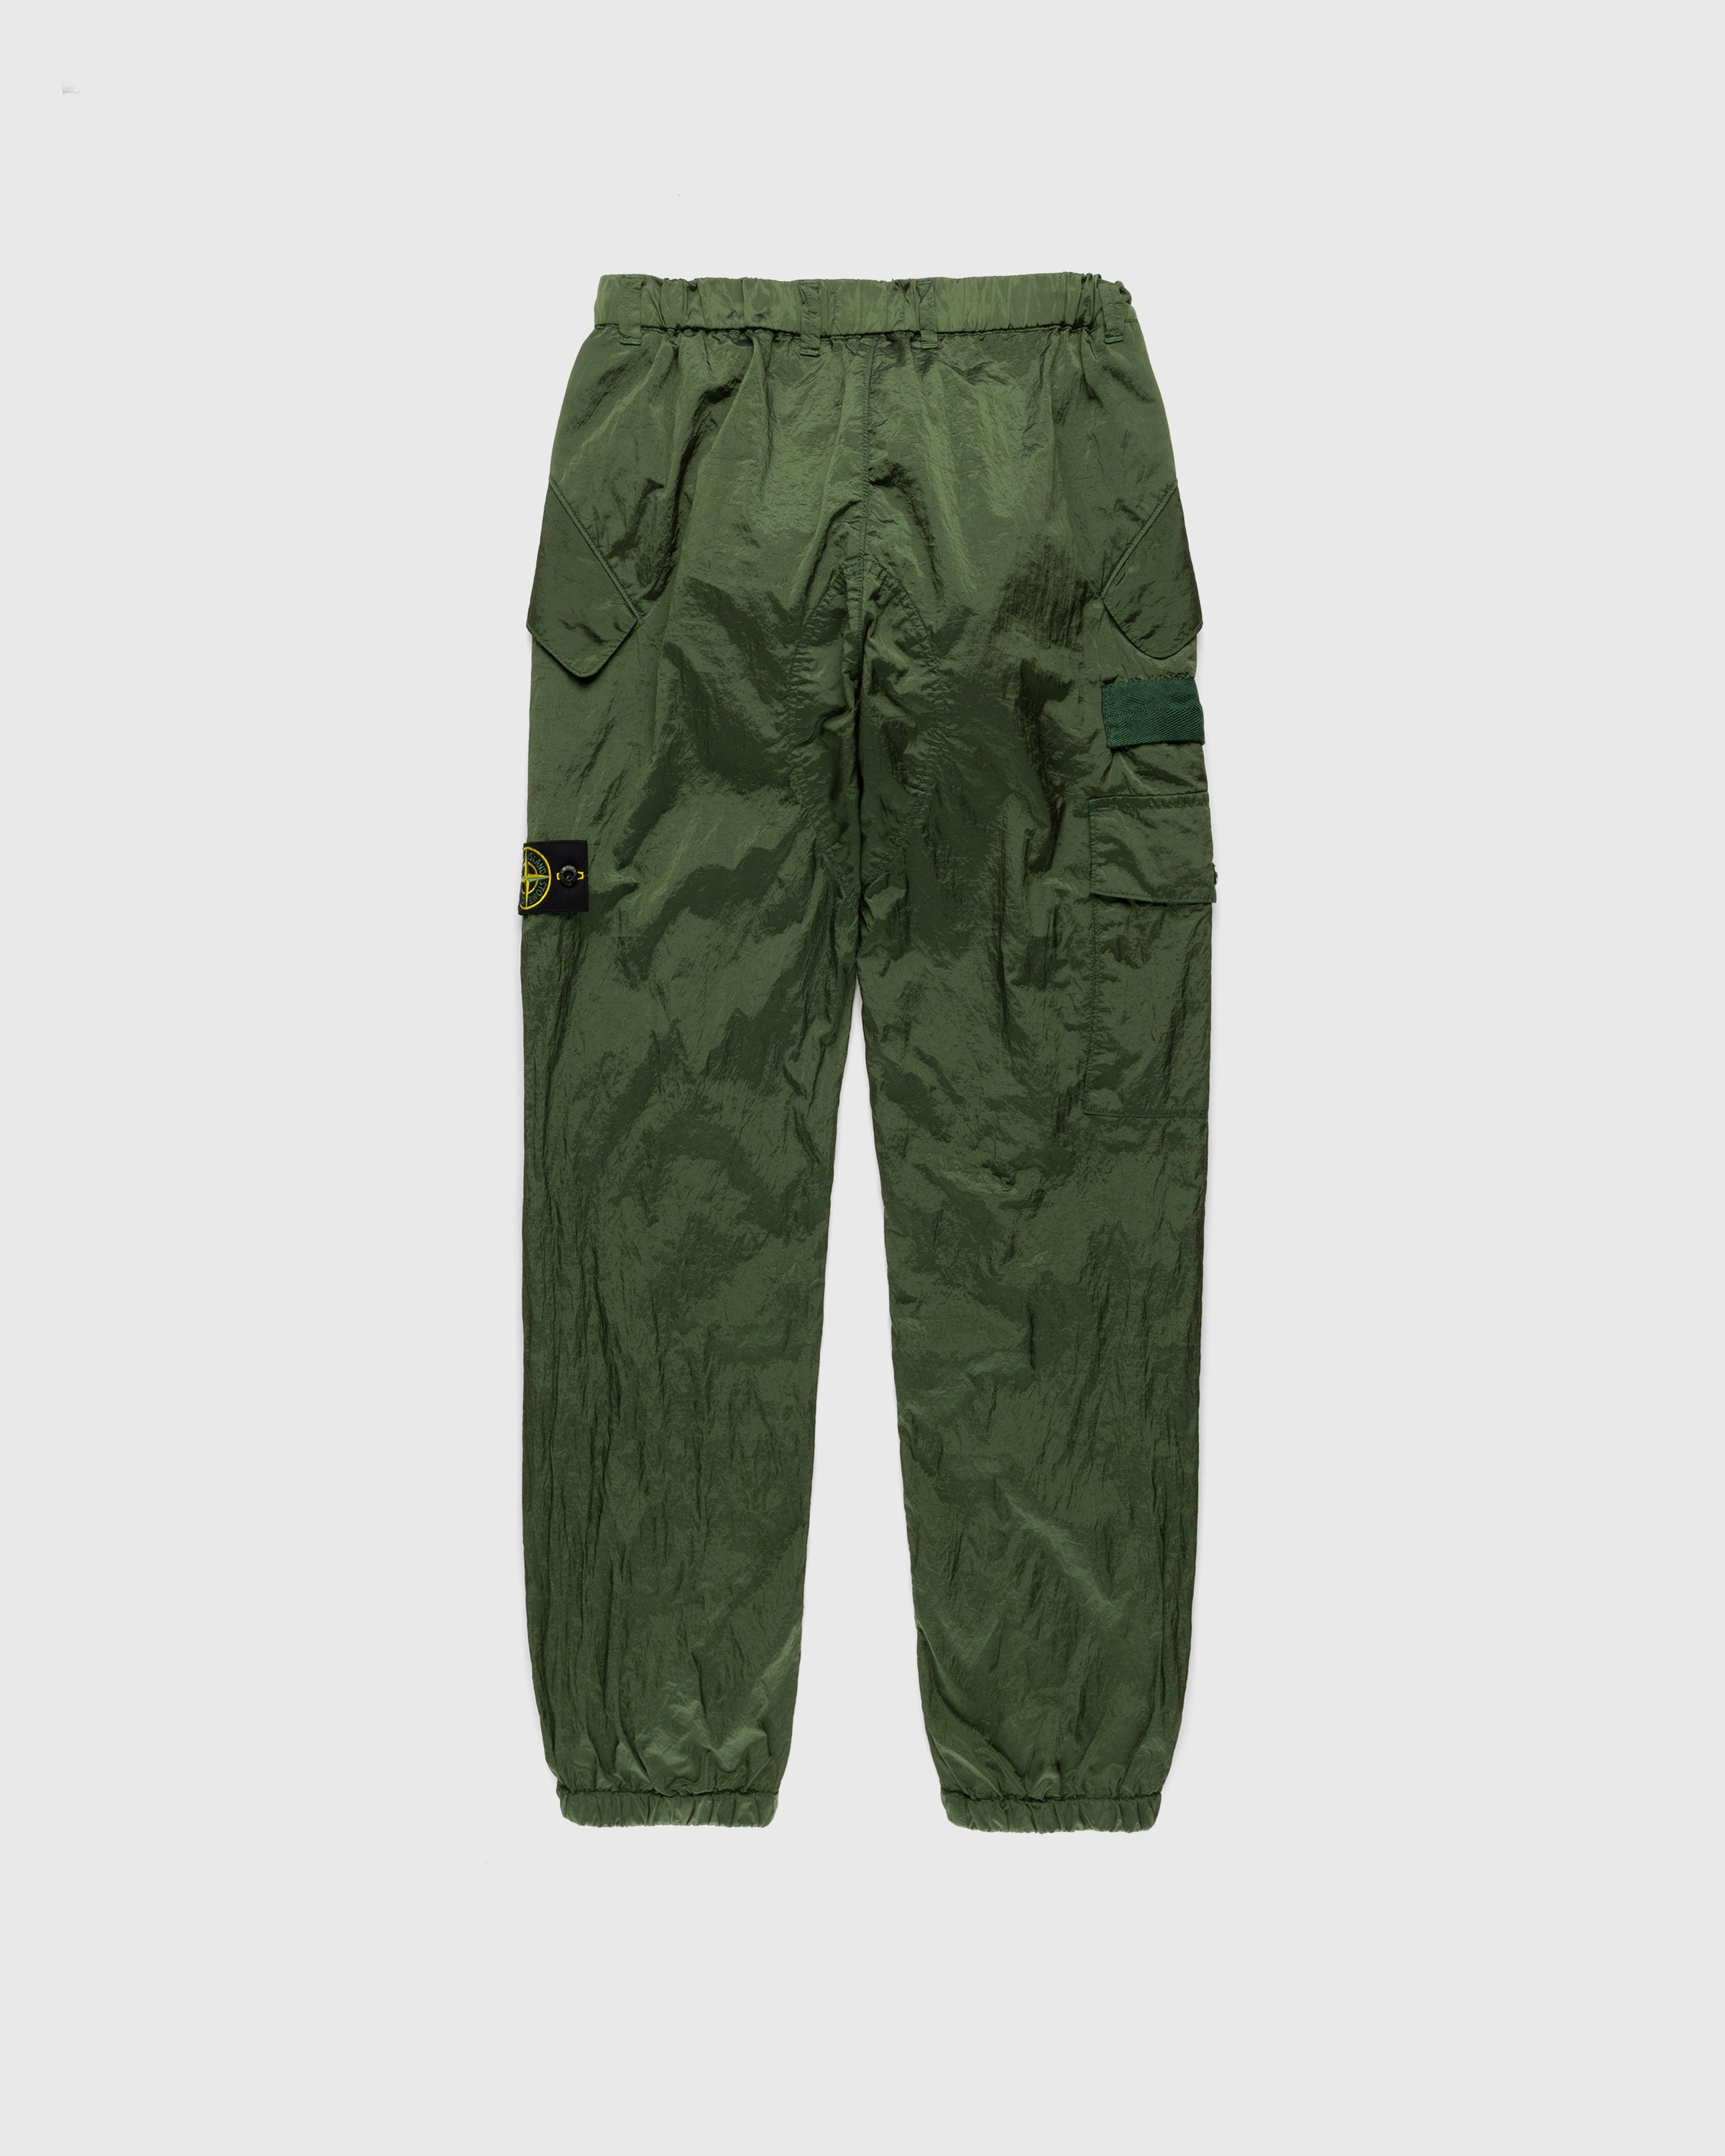 Stone Island - Nylon Metal Cargo Pants Olive - Clothing - Green - Image 2